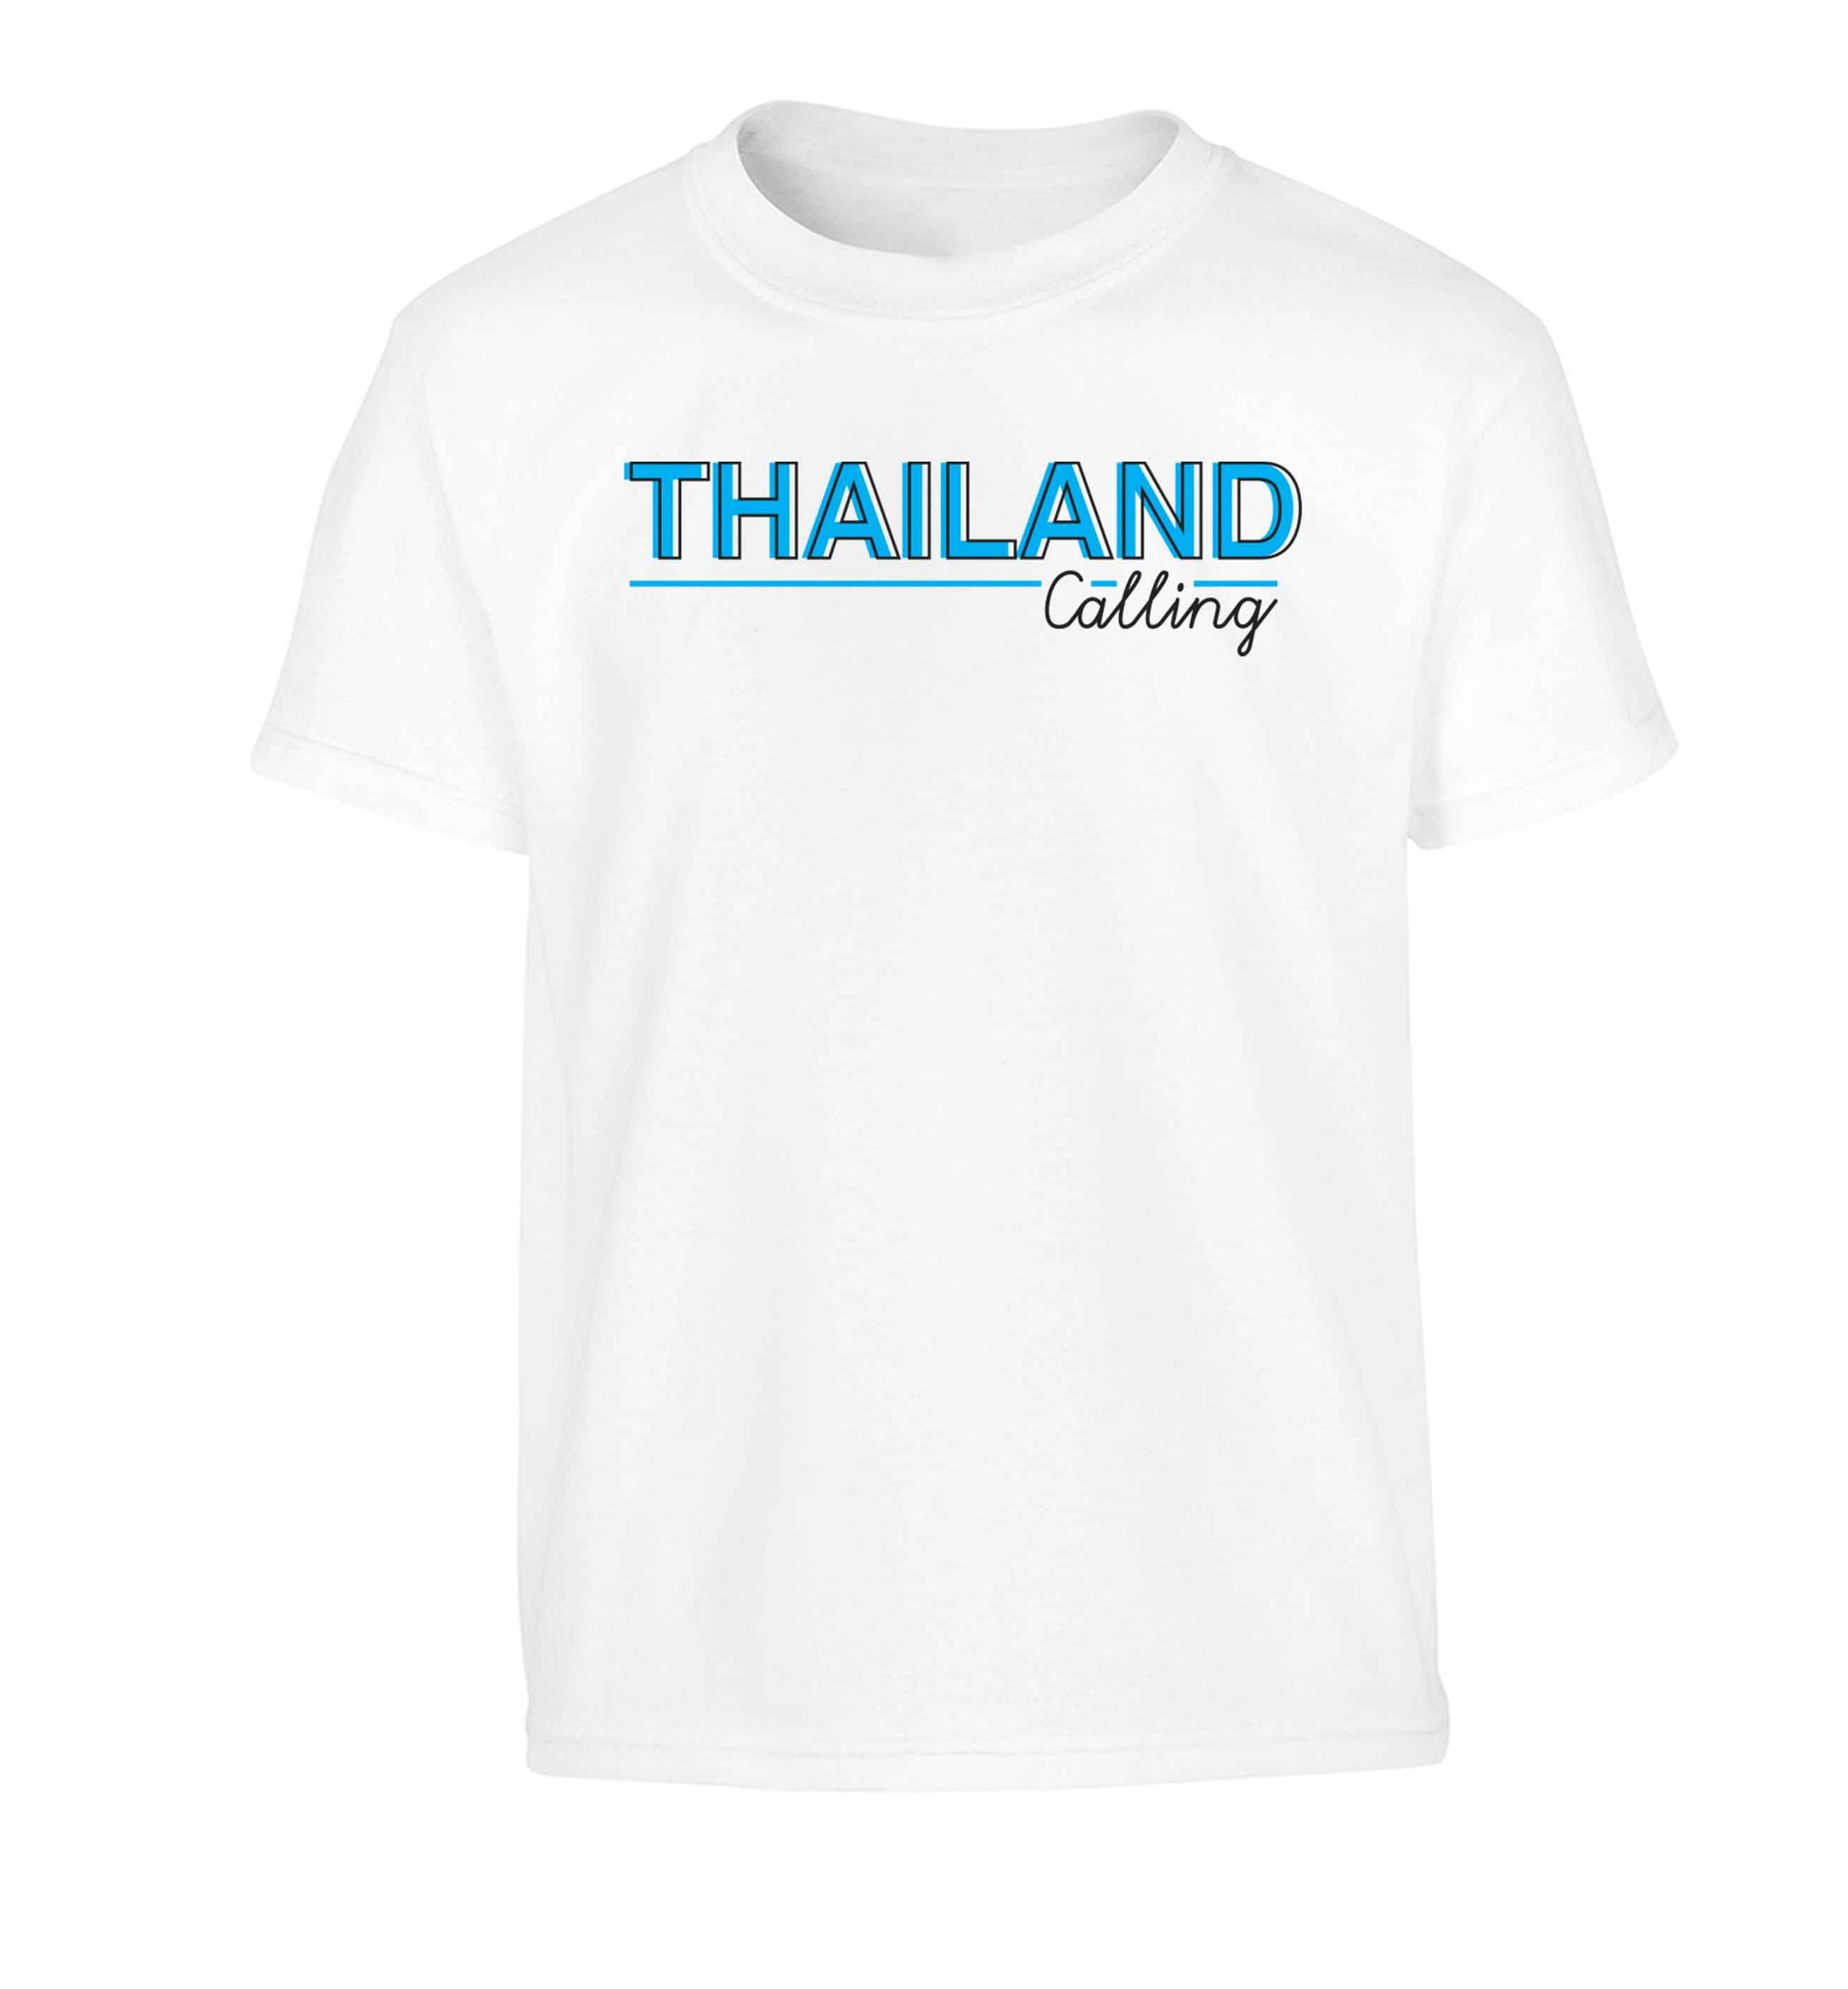 Thailand calling Children's white Tshirt 12-13 Years